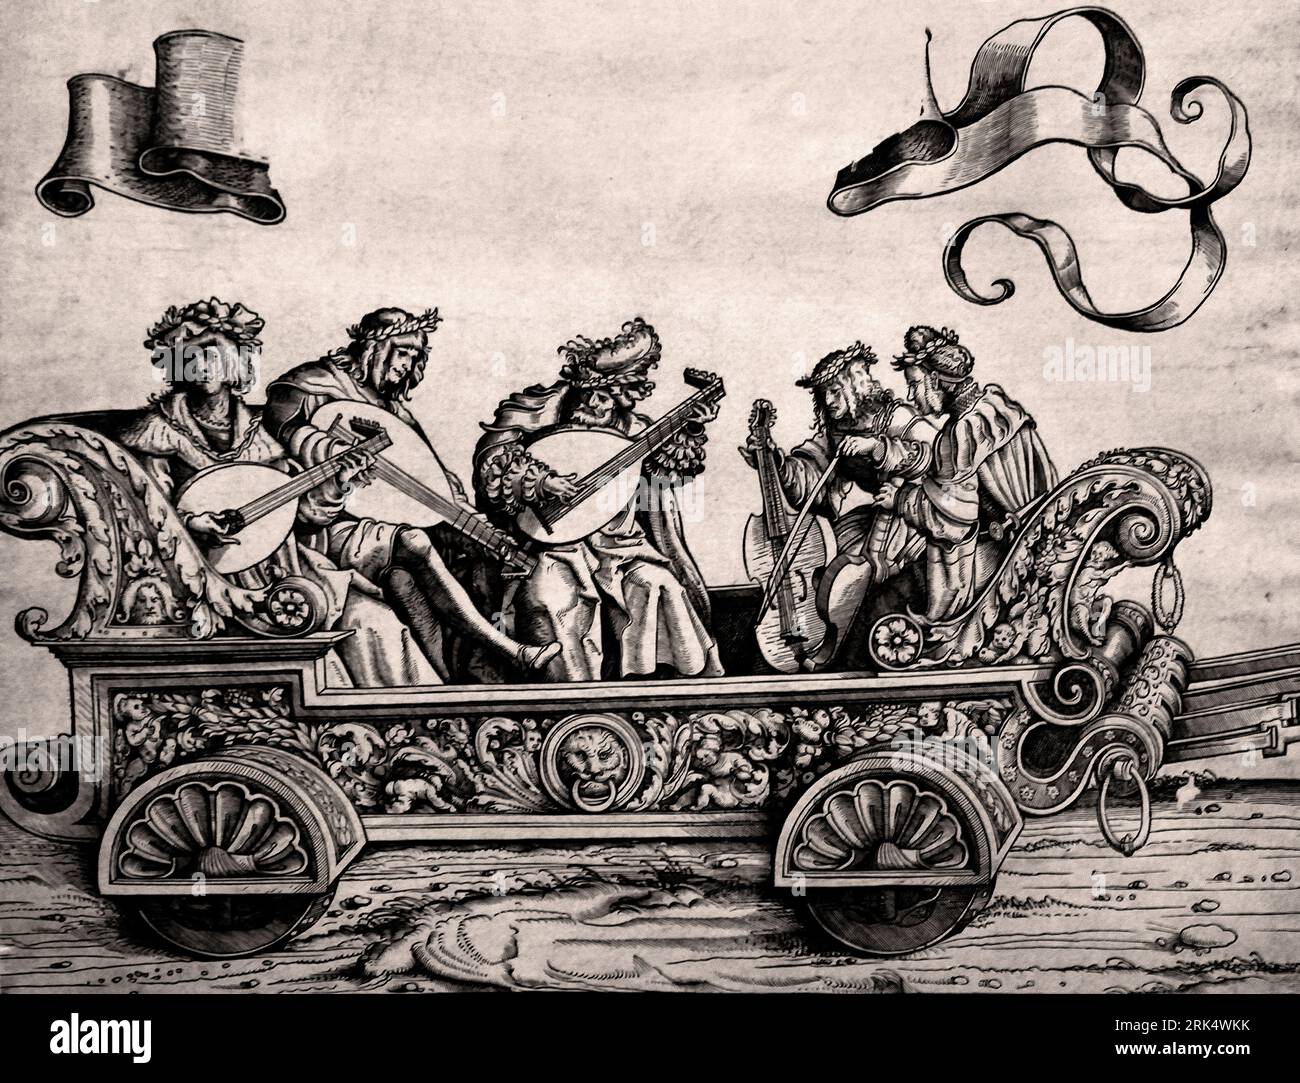 Triumphwagen mit Männern, die Laute und Viola da Gamba spielen, Triumphwagen von Kaiser Maximilian I. sind fünf Musiker. Drei Männer spielen eine Laute und zwei Männer streicheln eine Viola da Gamba, die sie zwischen die Knie geklemmt haben. Der Triumphwagen ist Teil des Sieges von Kaiser Maximilian und wird von zwei Rotwild in der Serie gezogen. Diese befinden sich auf dem Ausdruck, der eine Verbindung zur Szene auf der rechten Seite herstellt. Auf der Banderole über dem Auto ist Platz für Text. Printmaker, Hans Burgkmair, 1483 - 1526 Deutschland Rijksmuseum Amsterdam Stockfoto